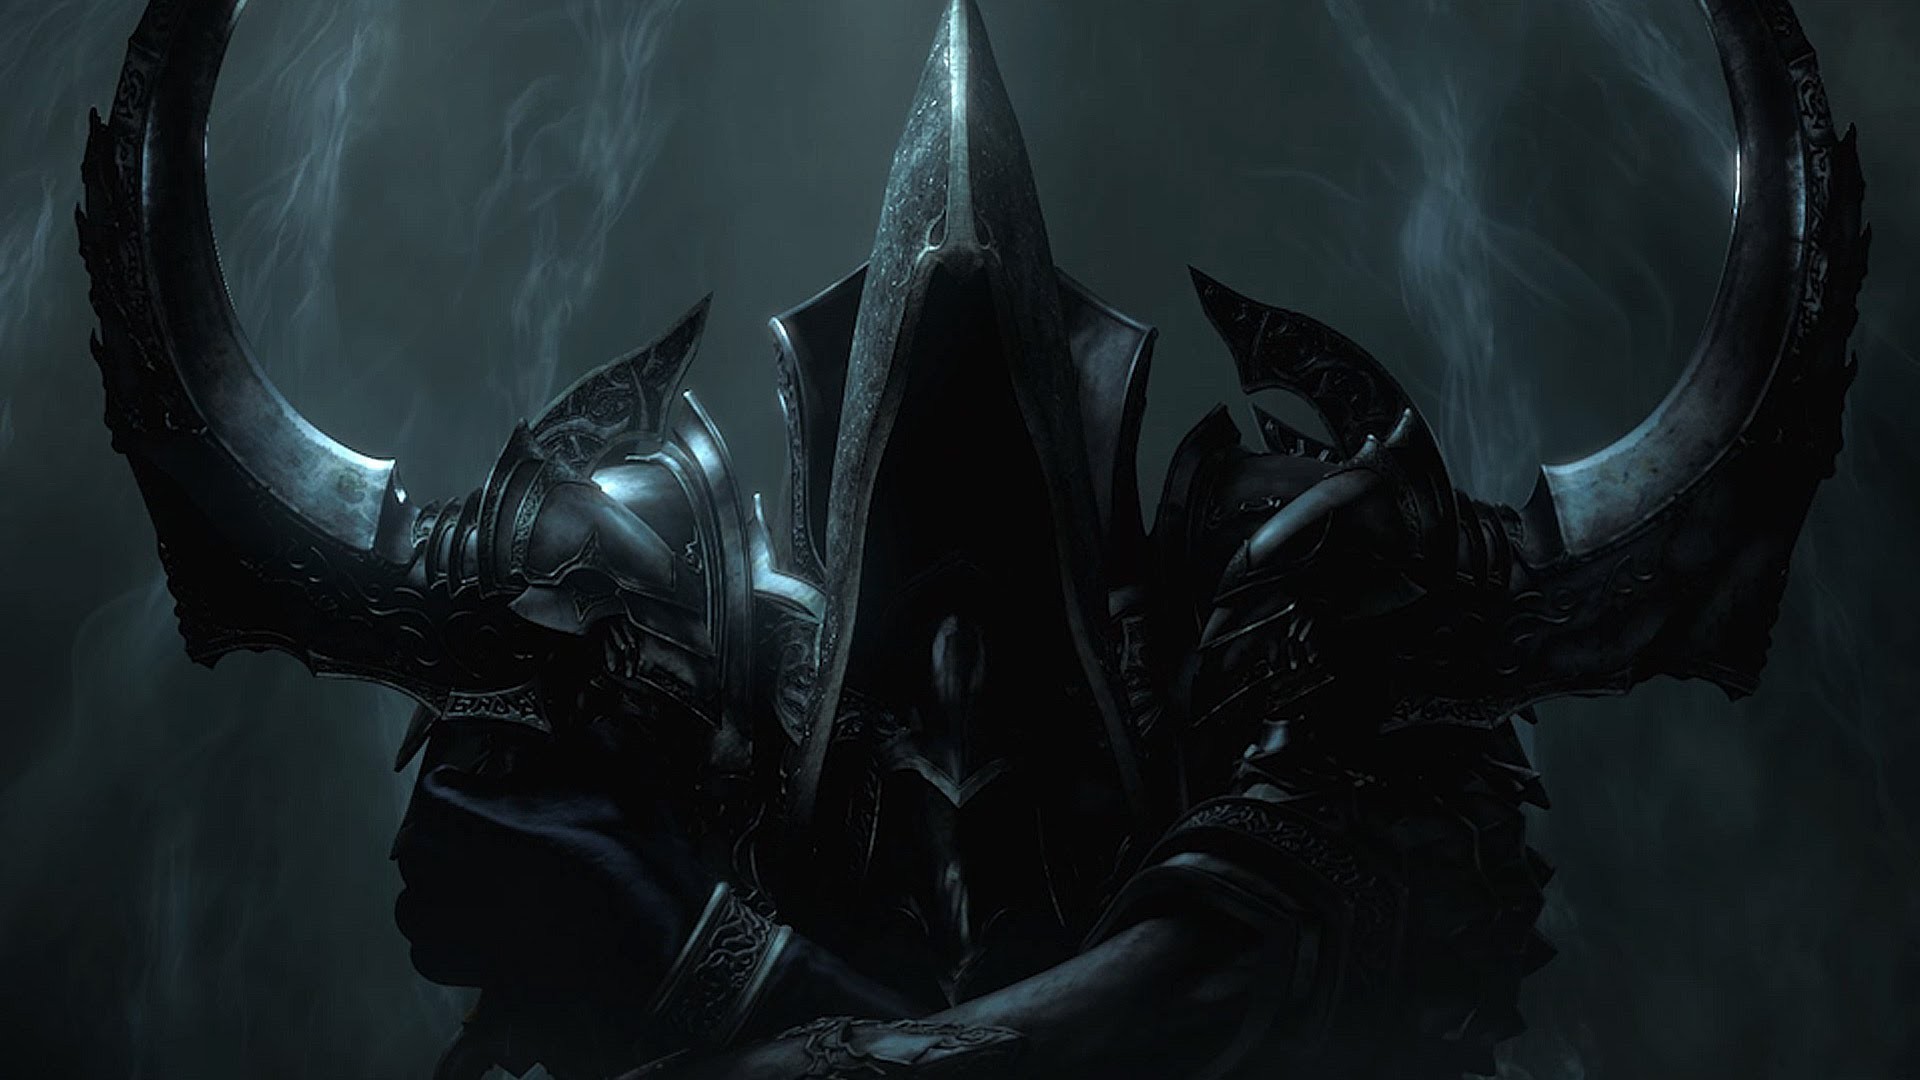 Diablo III, Diablo 3: Reaper of Souls Wallpapers HD ...